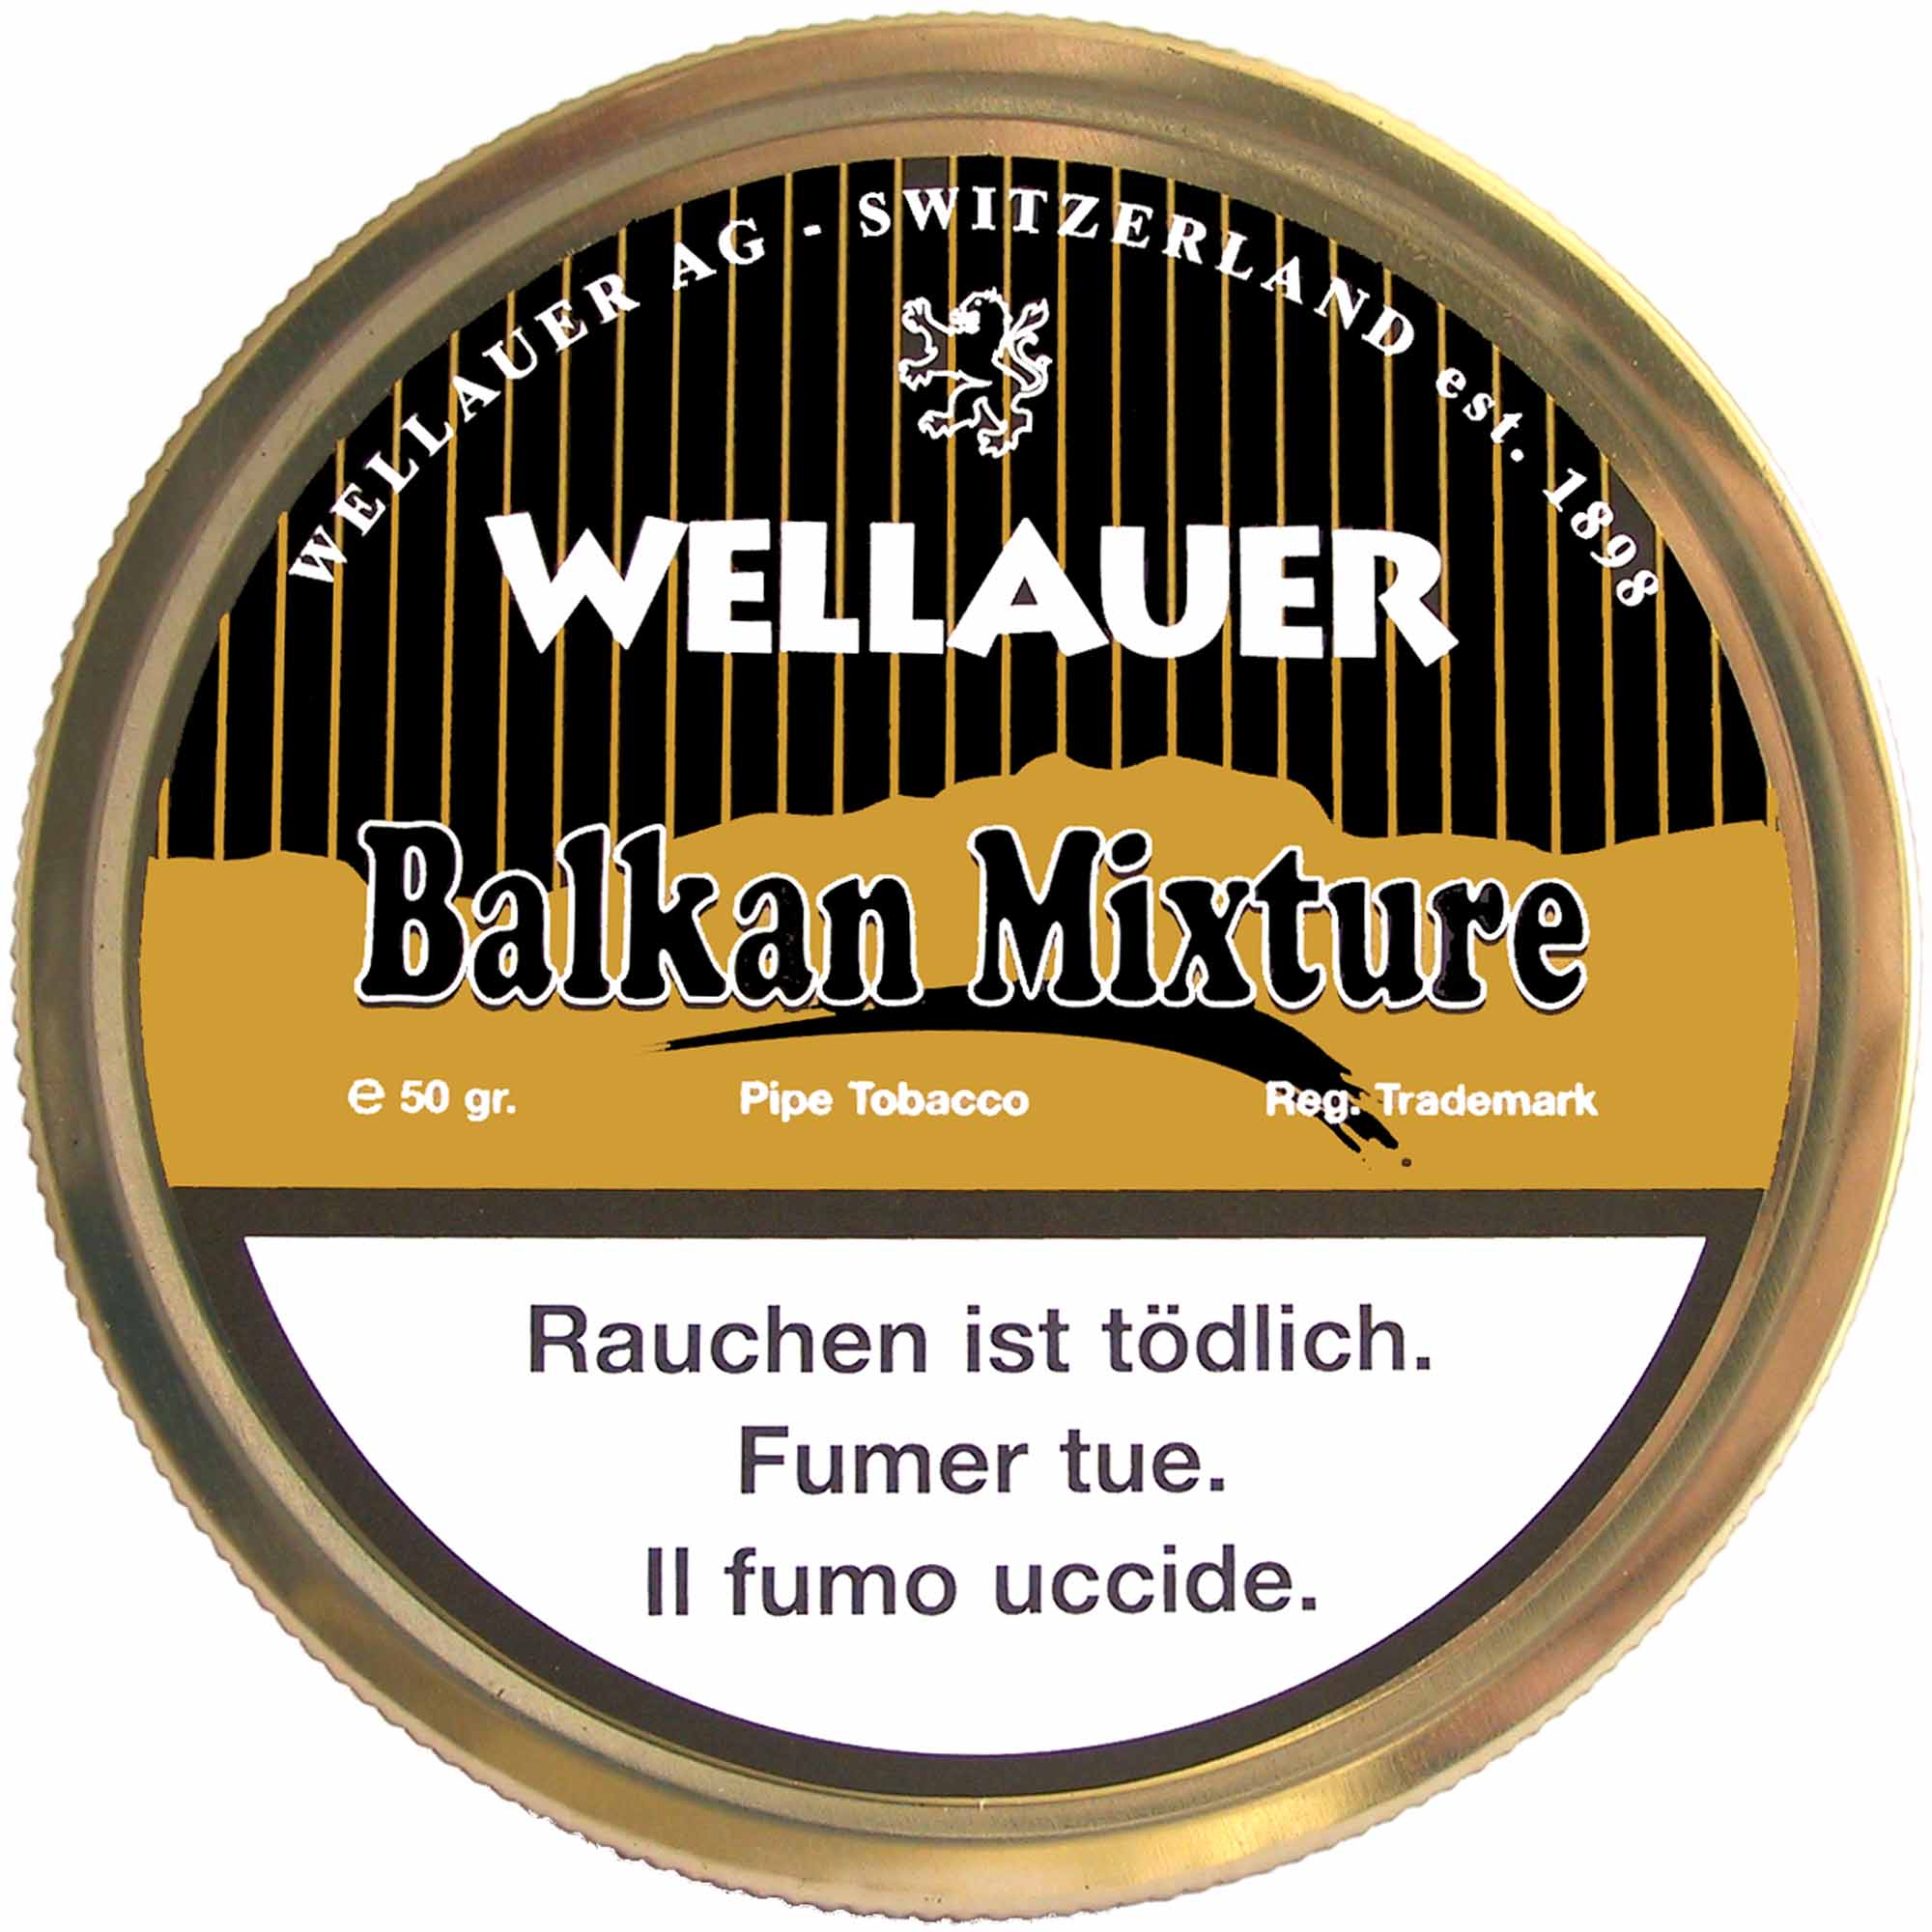 Wellauer's Pfeifentabak Balkan Mixture - 50g Tin